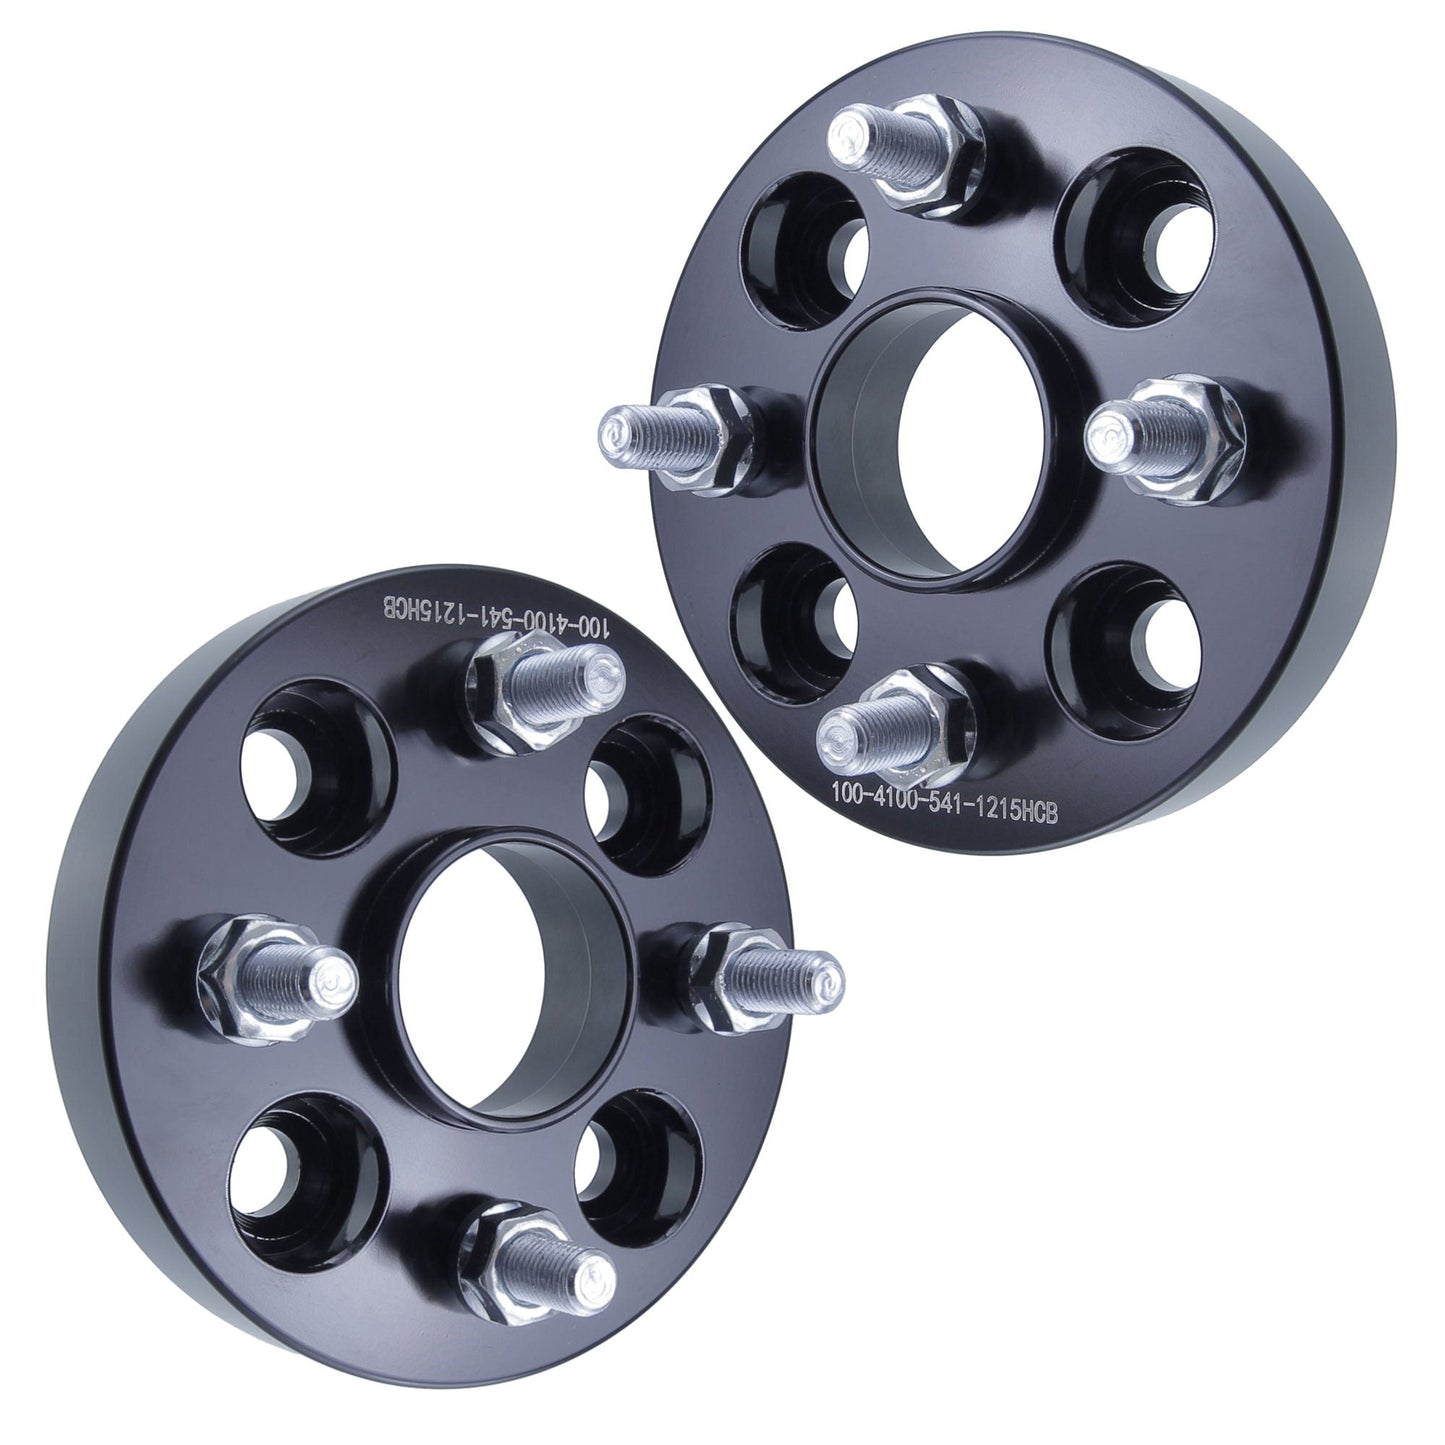 32mm (1.25") Titan Wheel Spacers for Mazda Miata Scion xB Toyota MR2 Celica | 4x100 | 54.1 Hubcentric |12x1.5 Studs |  Set of 4 | Titan Wheel Accessories